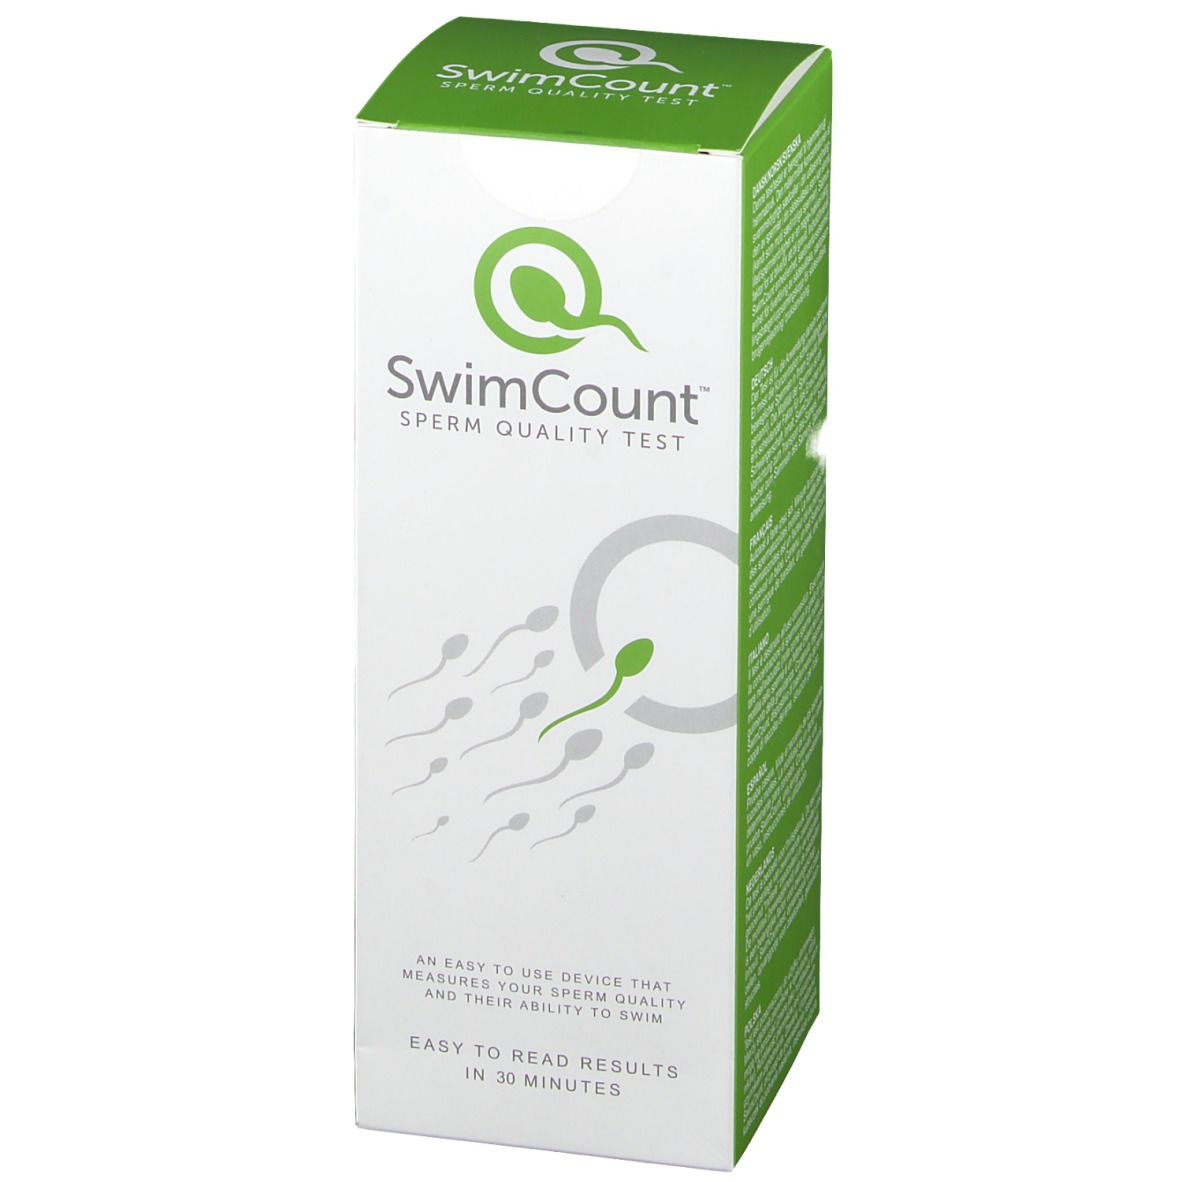 SwimCount Sperm quality test